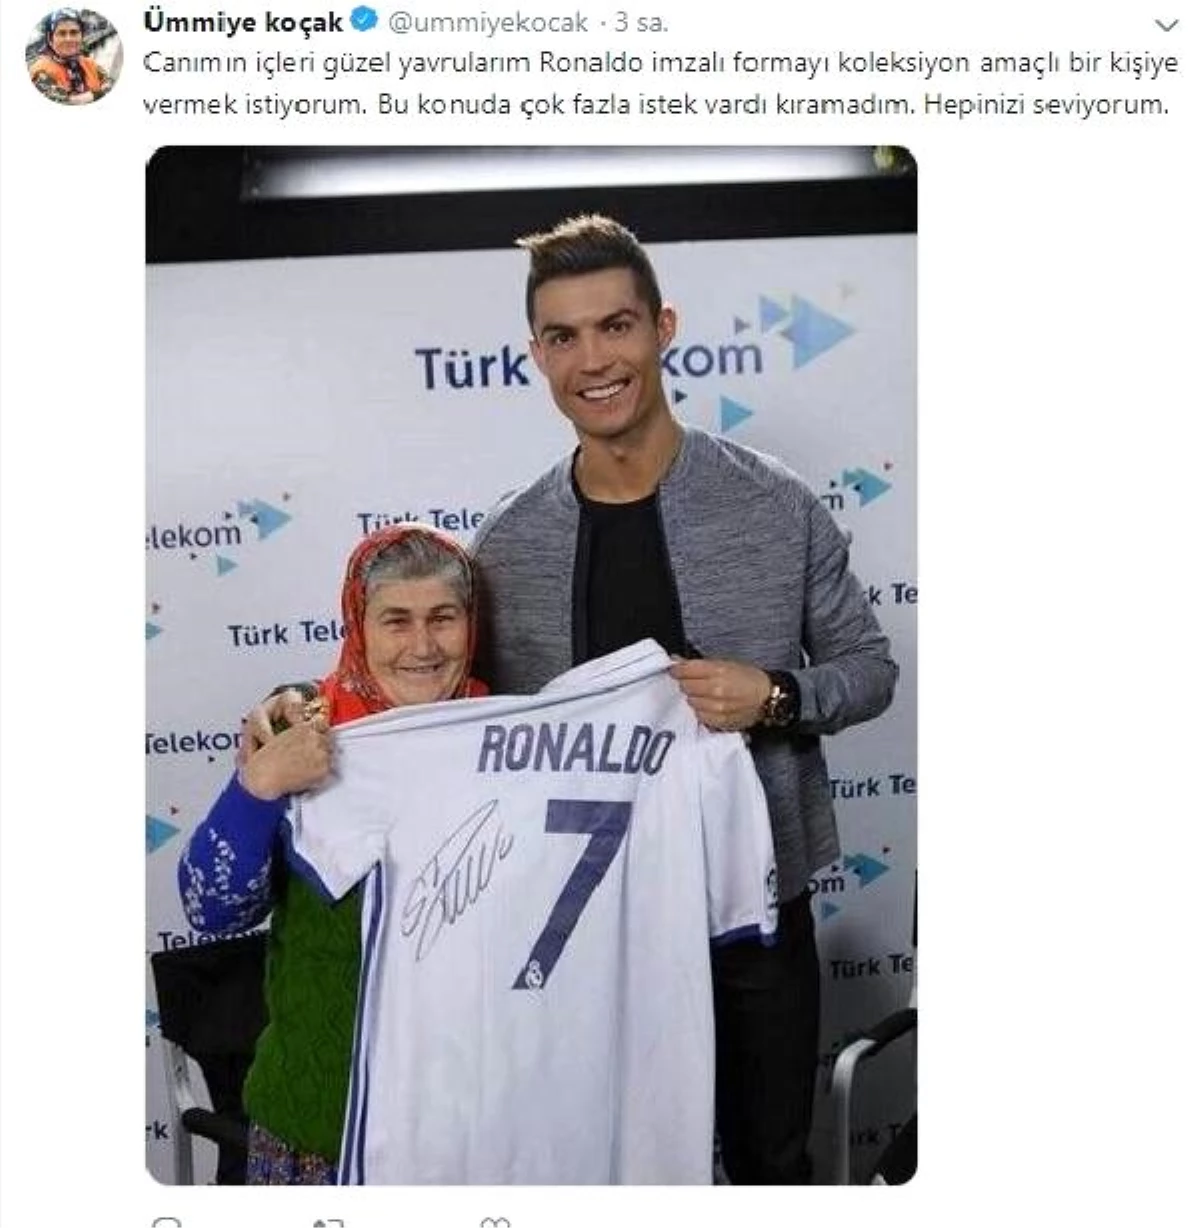 Ümmiye Koçak, Ronaldo imzalı formasını bir takipçisine hediye edecek